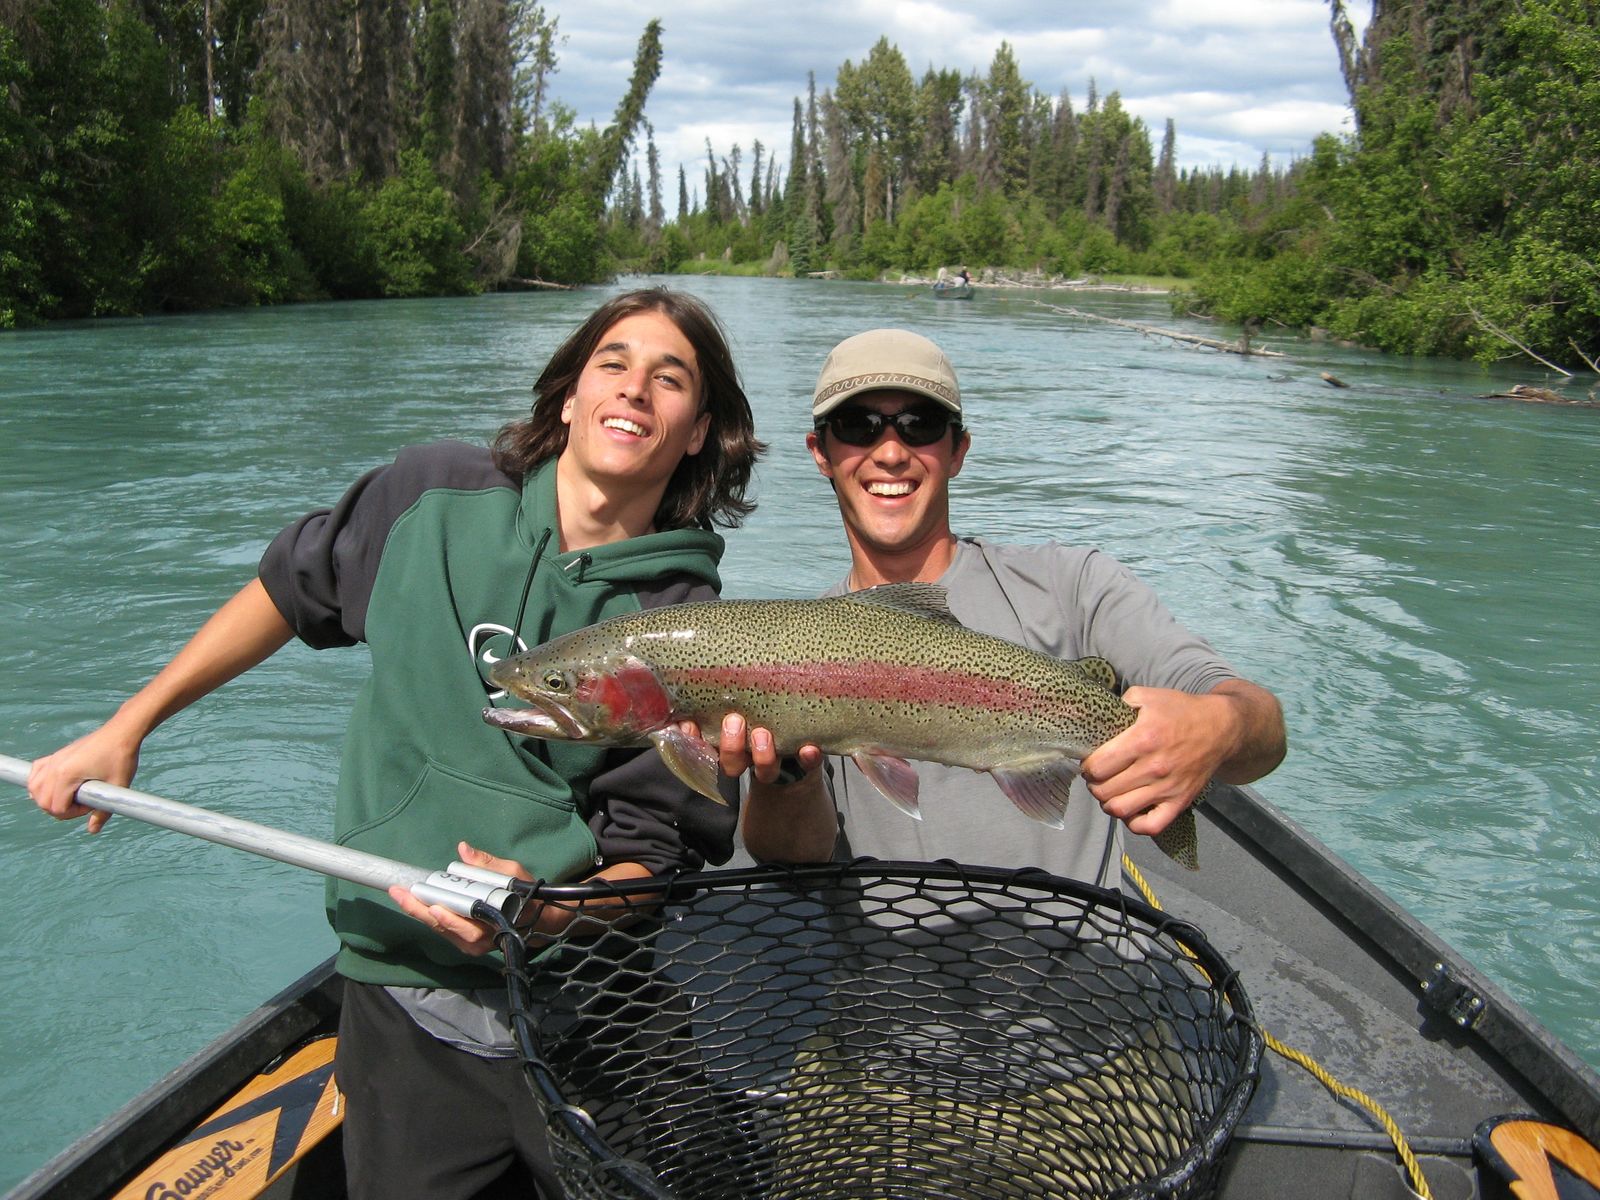 Pesca en Alaska